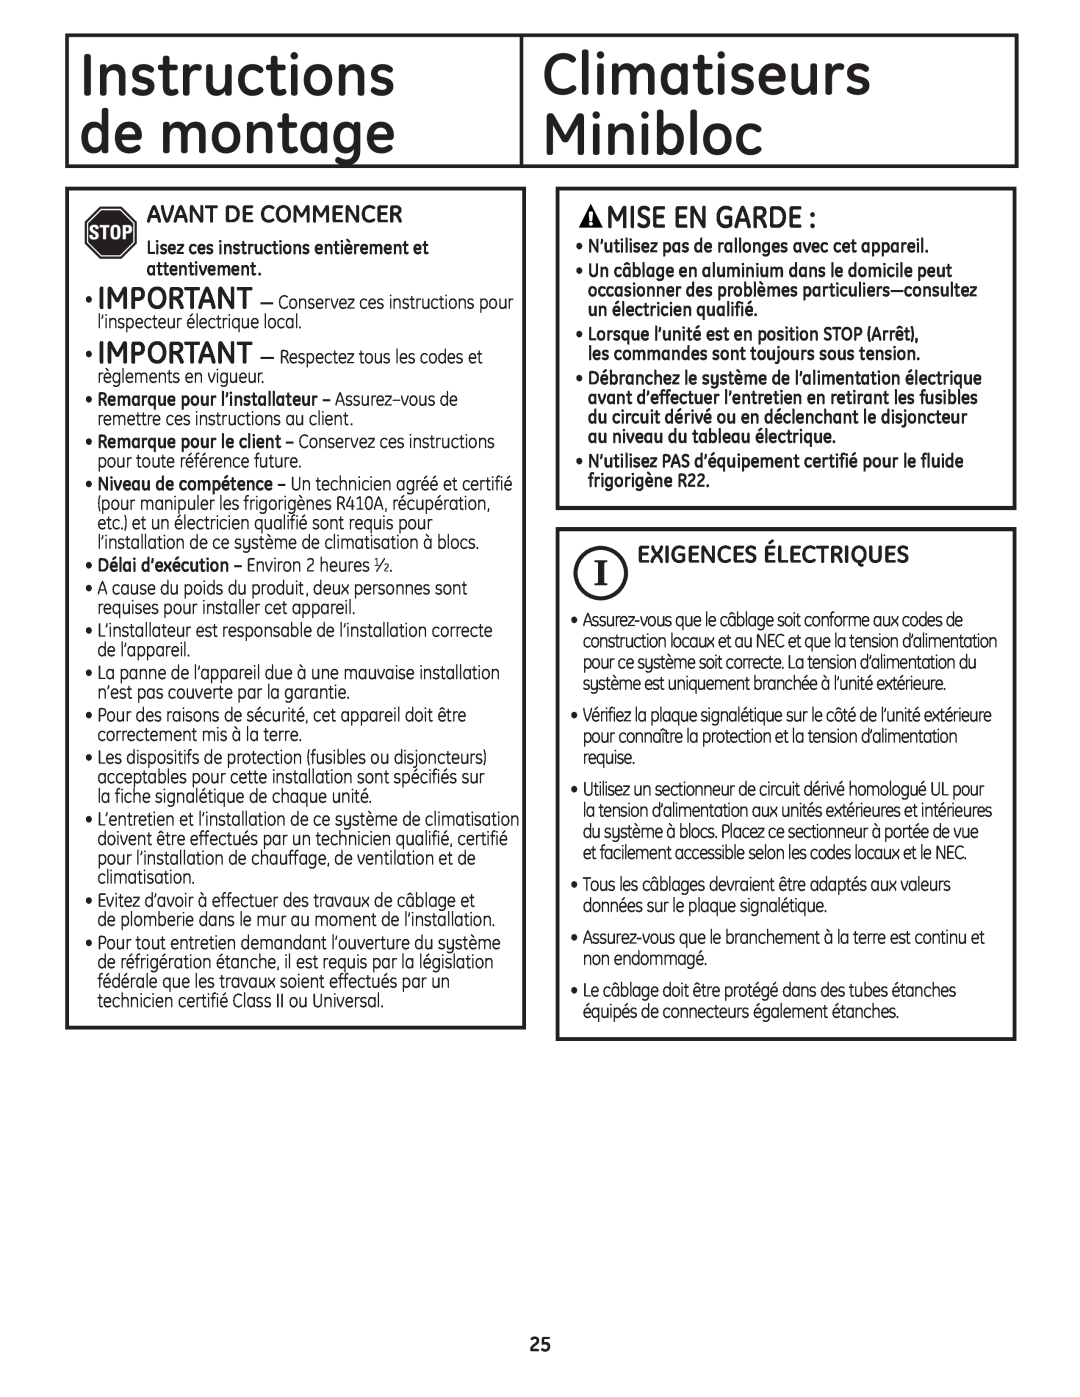 GE AE0CD14DM Instructions de montage, Climatiseurs Minibloc, Mise En Garde, Avant De Commencer, Exigences Électriques 